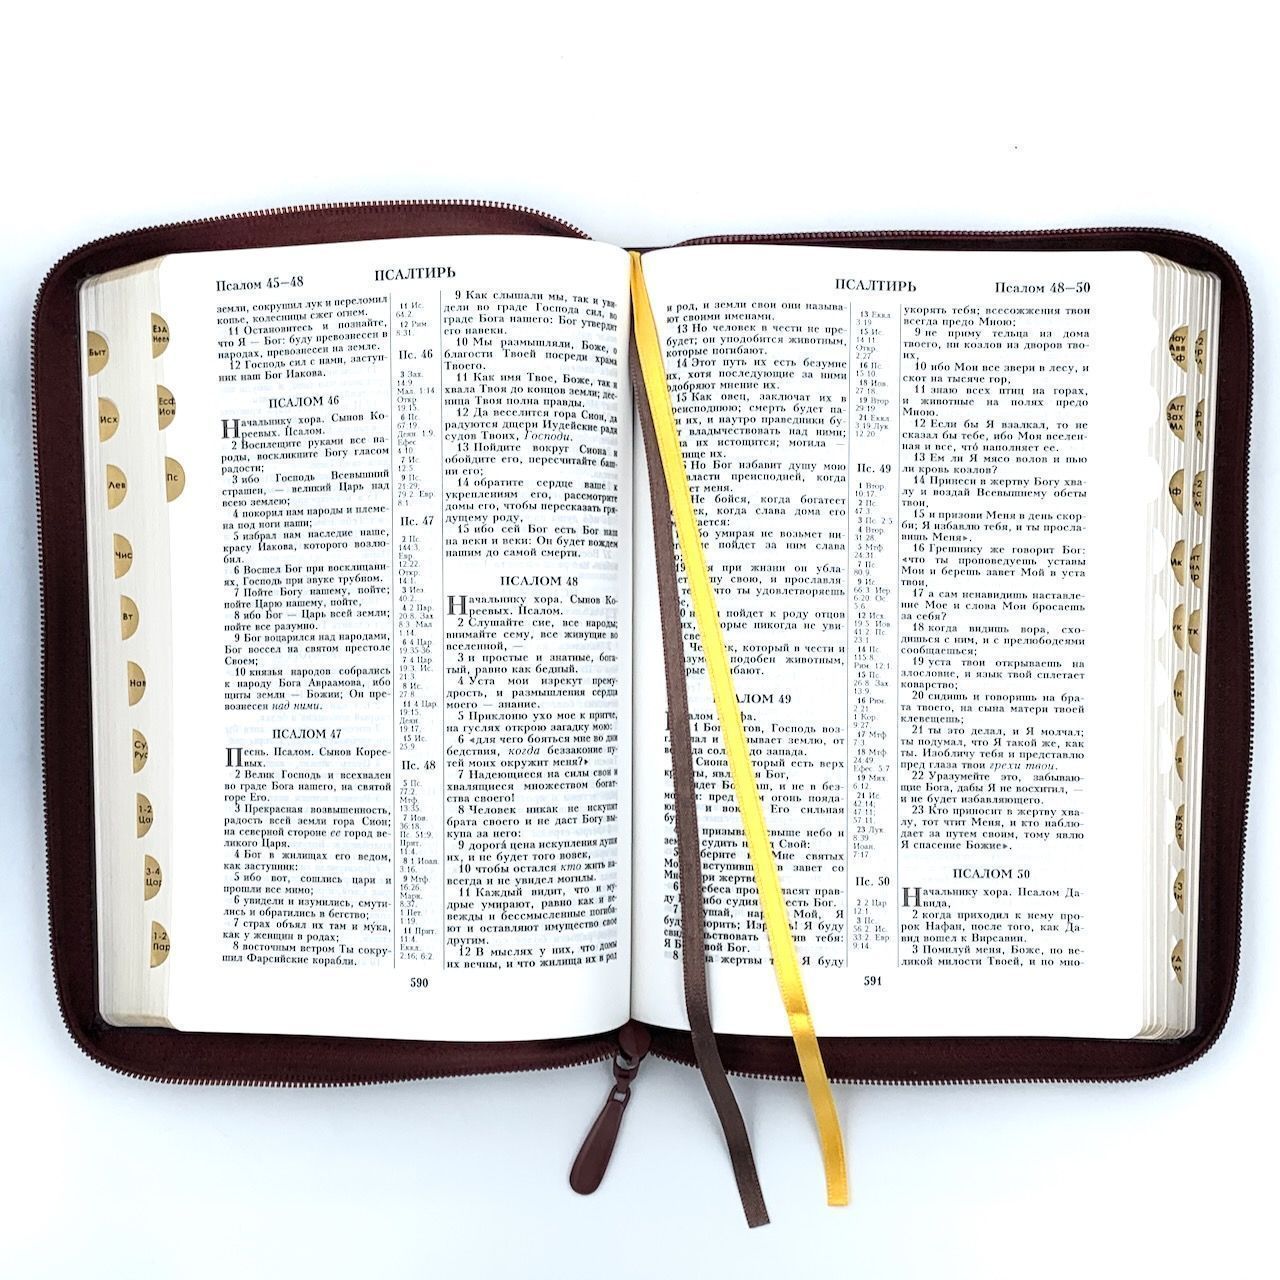 Библия 076zti код 23076-36,  дизайн "Библия с вензелем", переплет из искусственной кожи на молнии с индексами, цвет темно-коричневый, размер 180x243 мм